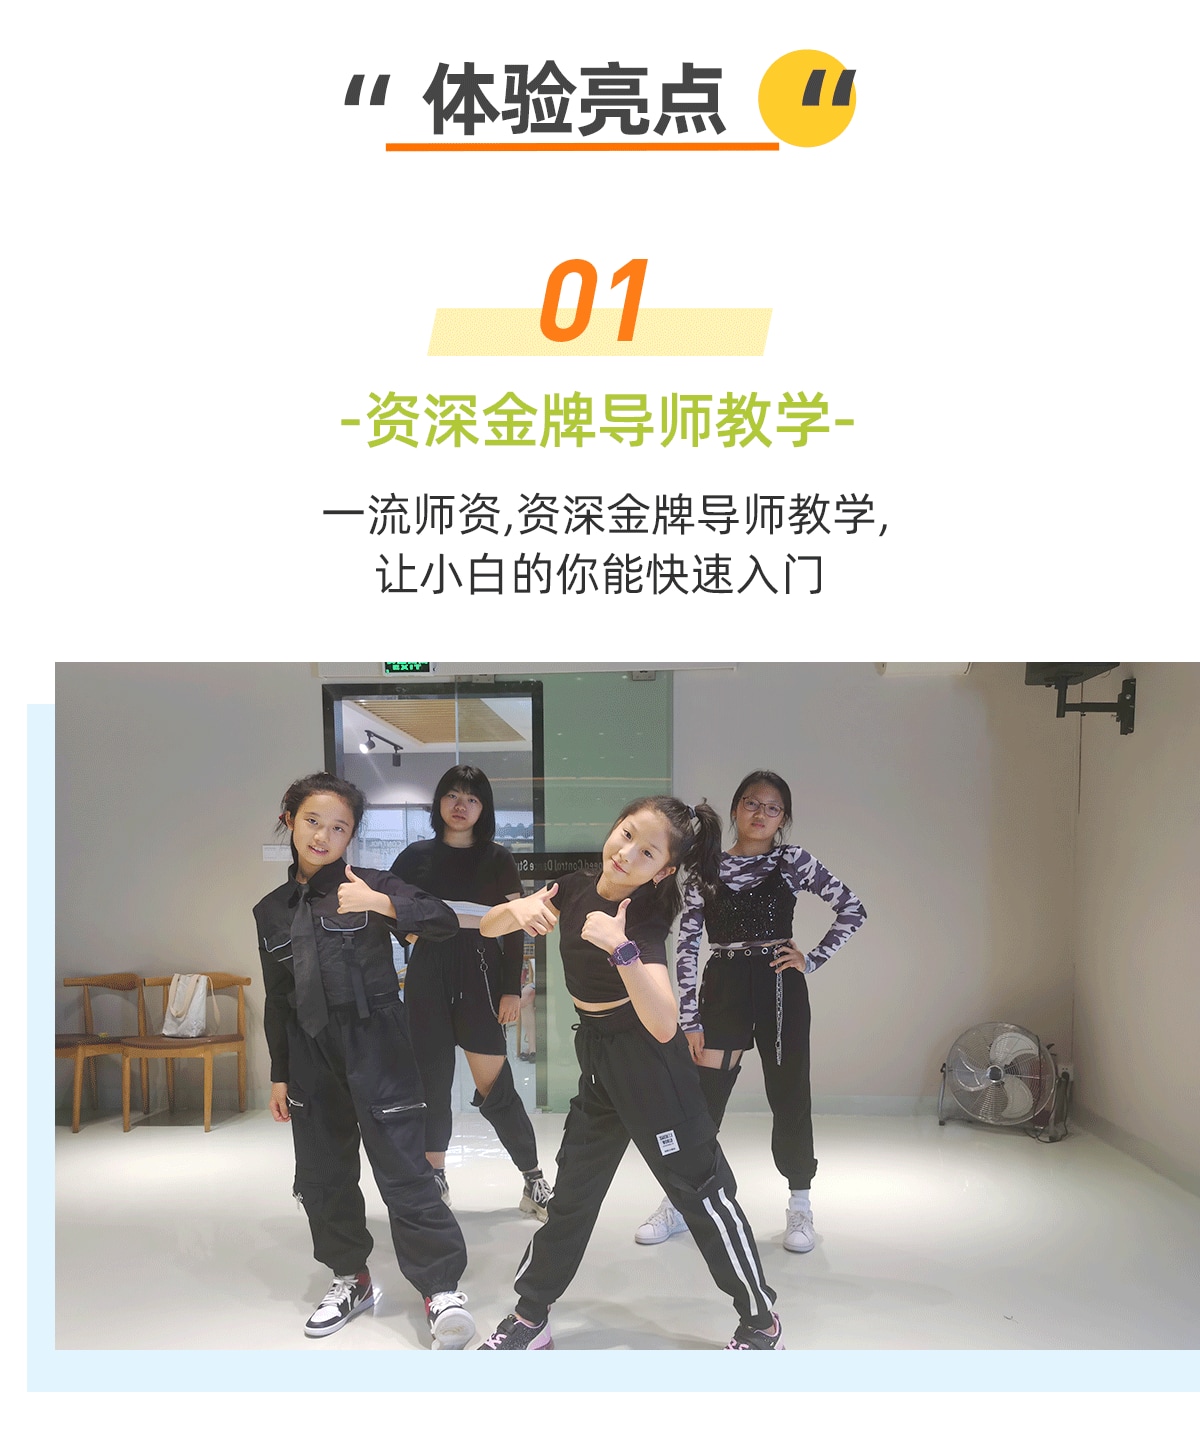 【深圳街舞課程】SC速控街舞體驗